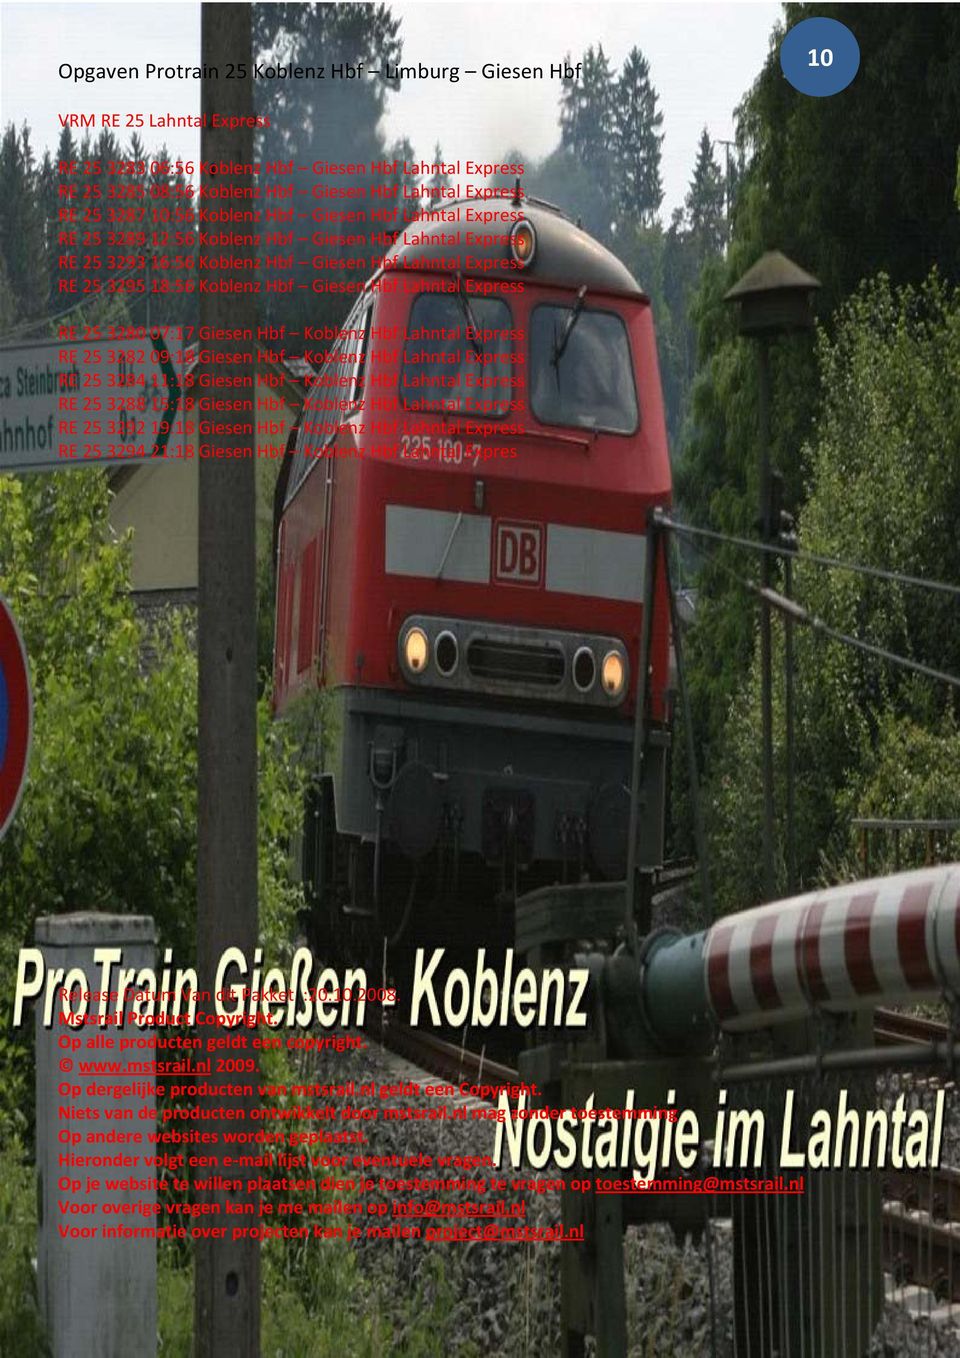 Koblenz Hbf Lahntal Express RE 25 3282 09:18 Giesen Hbf Koblenz Hbf Lahntal Express RE 25 3284 11:18 Giesen Hbf Koblenz Hbf Lahntal Express RE 25 3288 15:18 Giesen Hbf Koblenz Hbf Lahntal Express RE